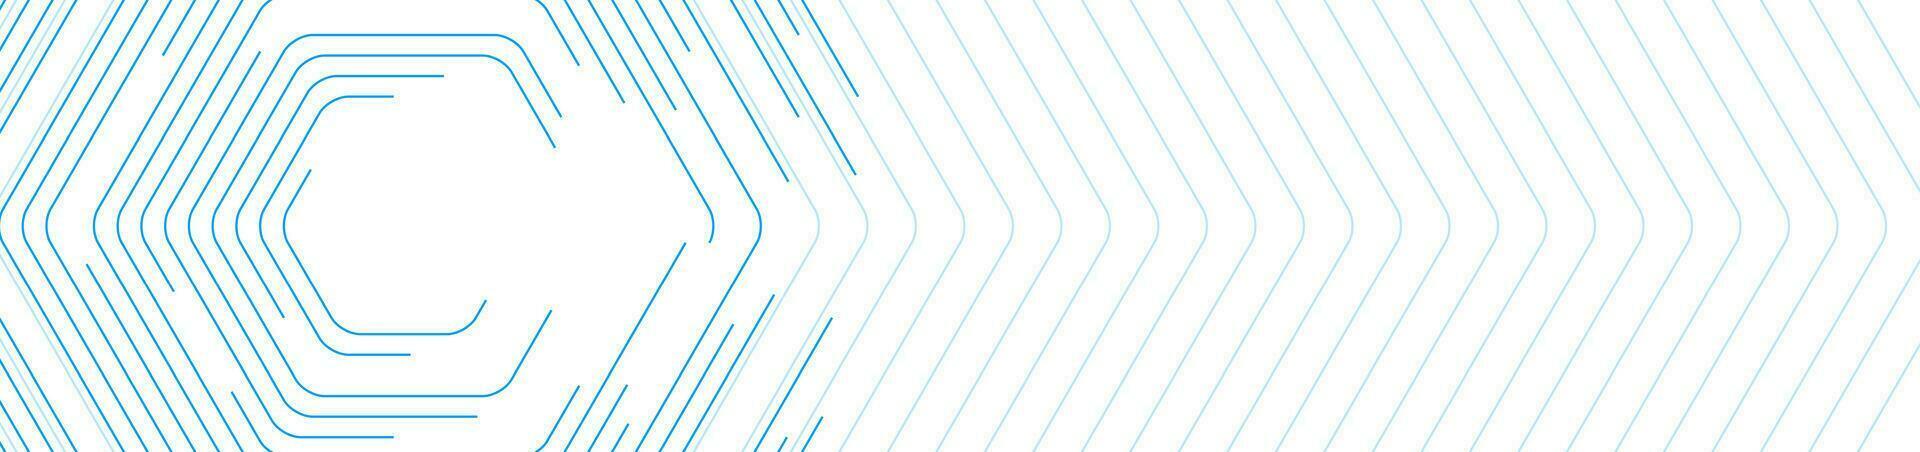 azul hexagonal linhas abstrato futurista tecnologia bandeira vetor